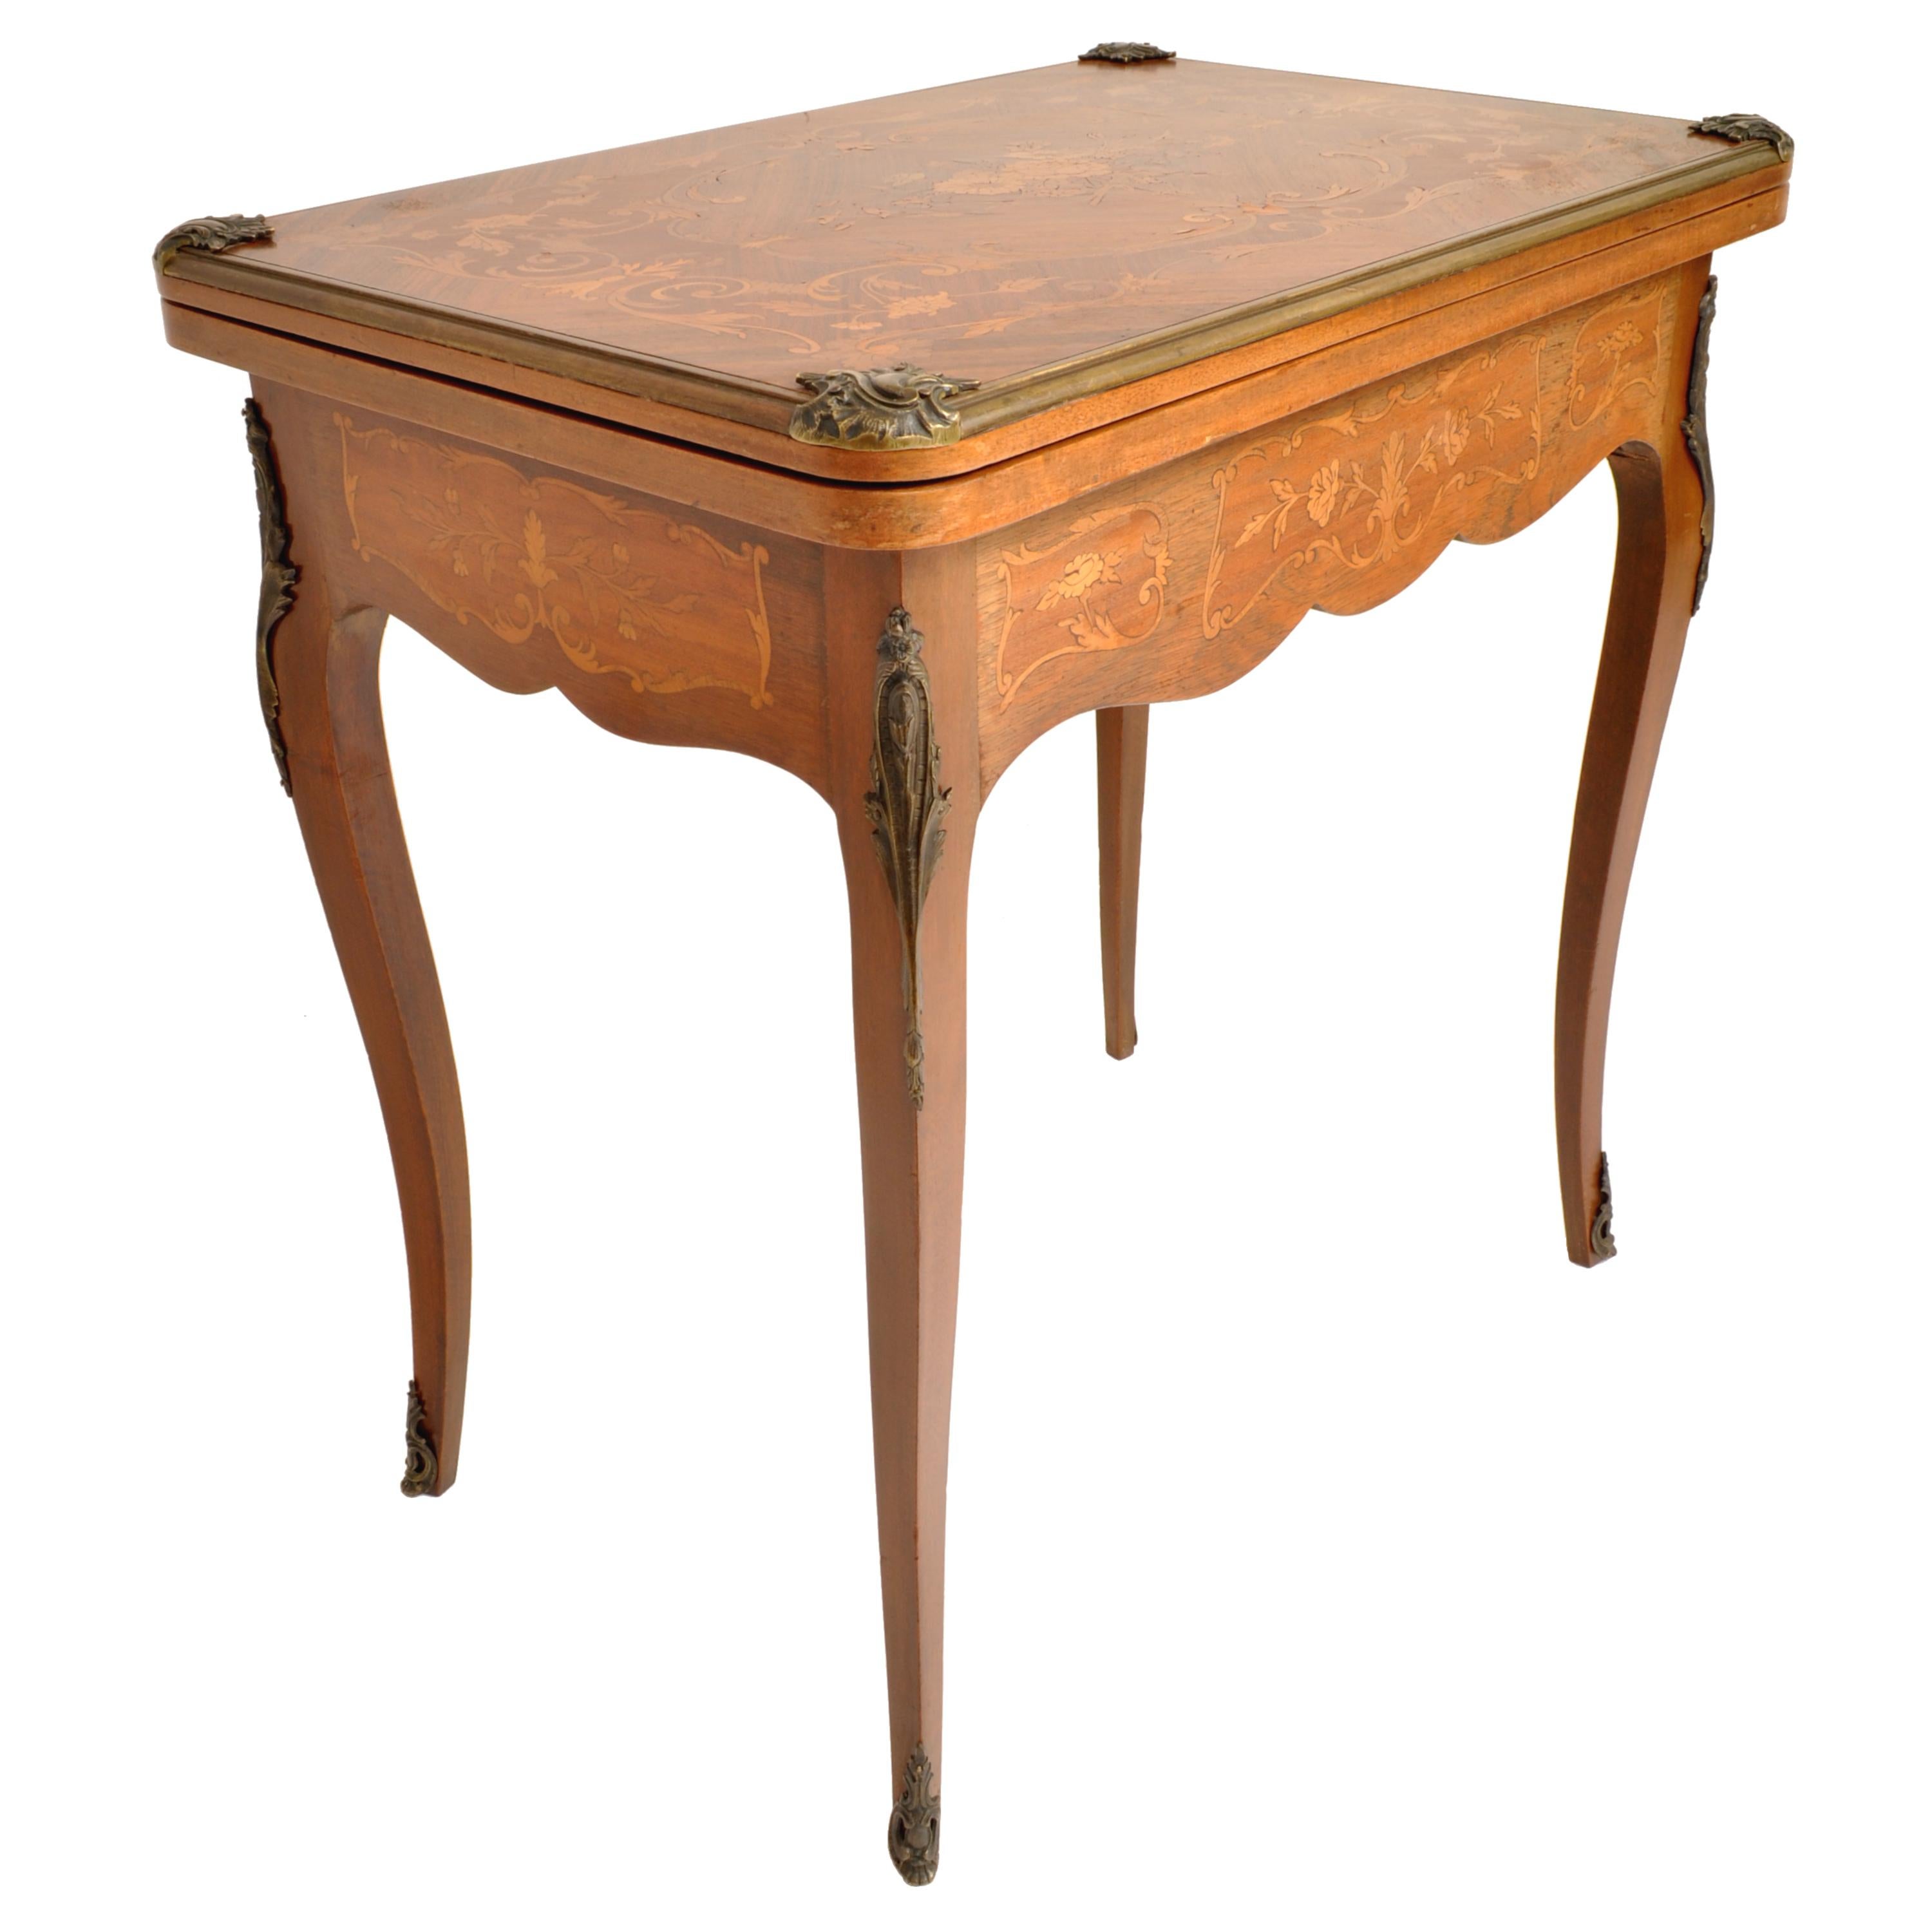 Ein feiner und eleganter antiker französischer Louis XVI-Tisch mit Intarsien aus Nussbaum und Obstholz, um 1880.
Der Tisch hat eine Feder gebändert Nussbaum oben, fein mit einem zentralen floralen Panel eingelegt und umgeben von eingelegten